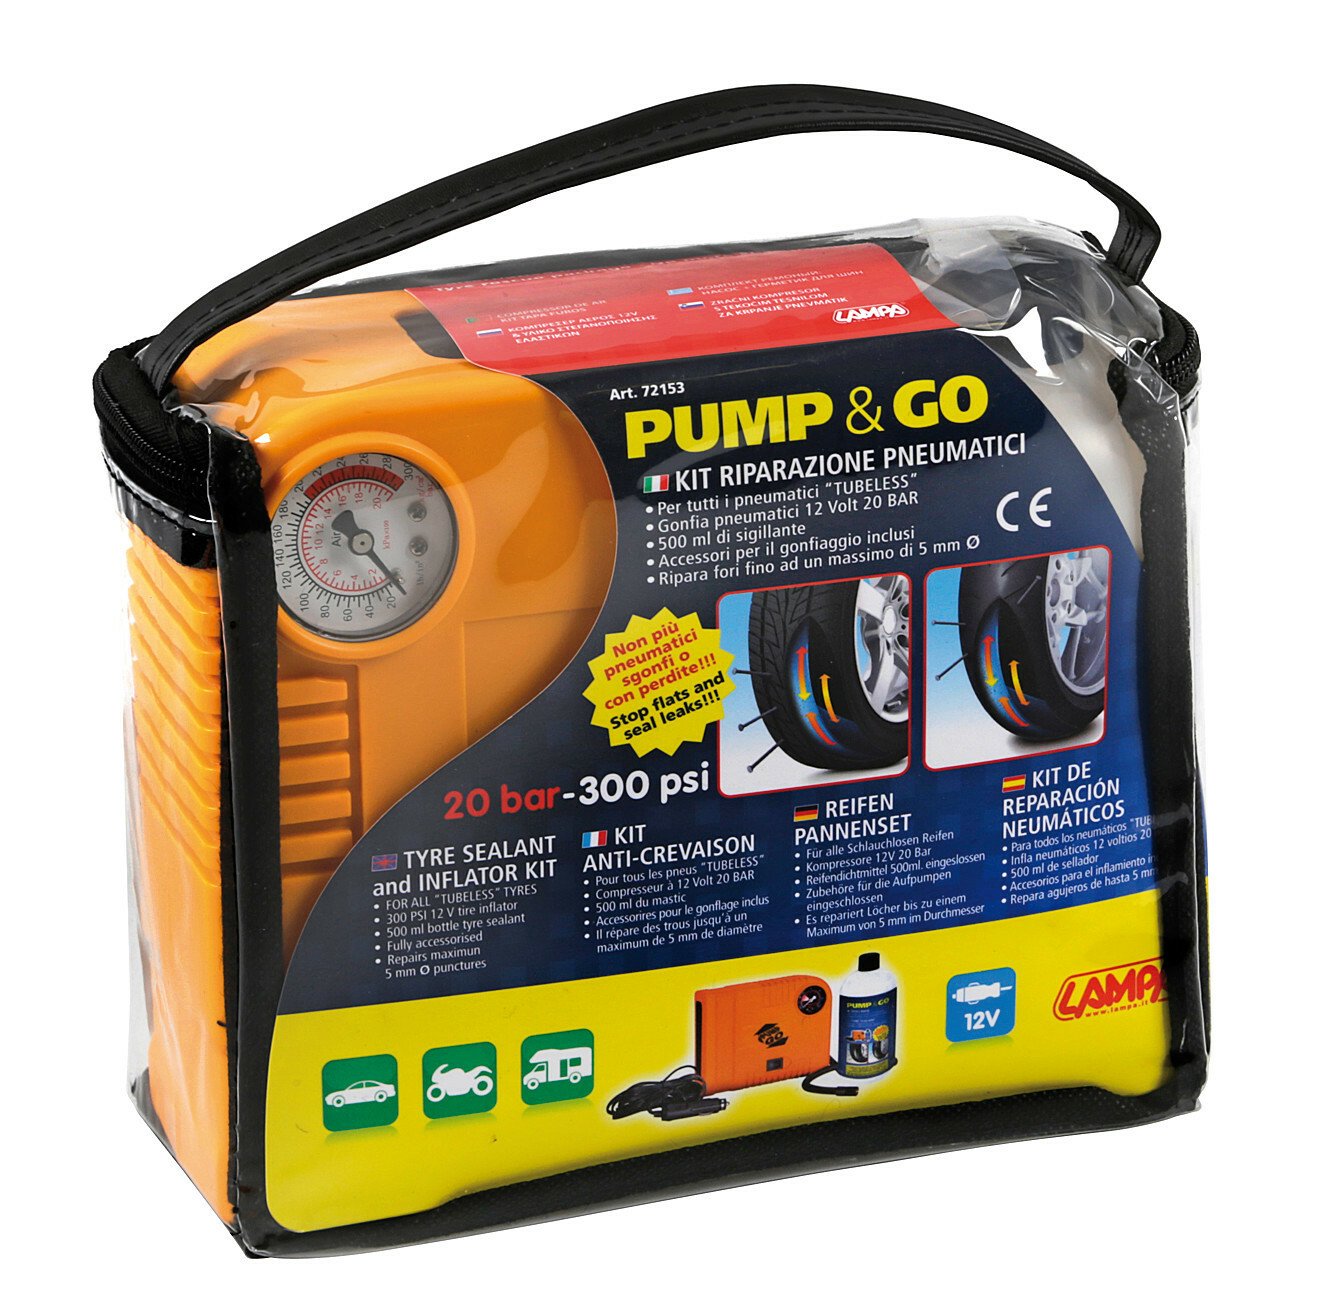 Kompresszor Pump & Go 12V, gumi tömítő készlet thumb